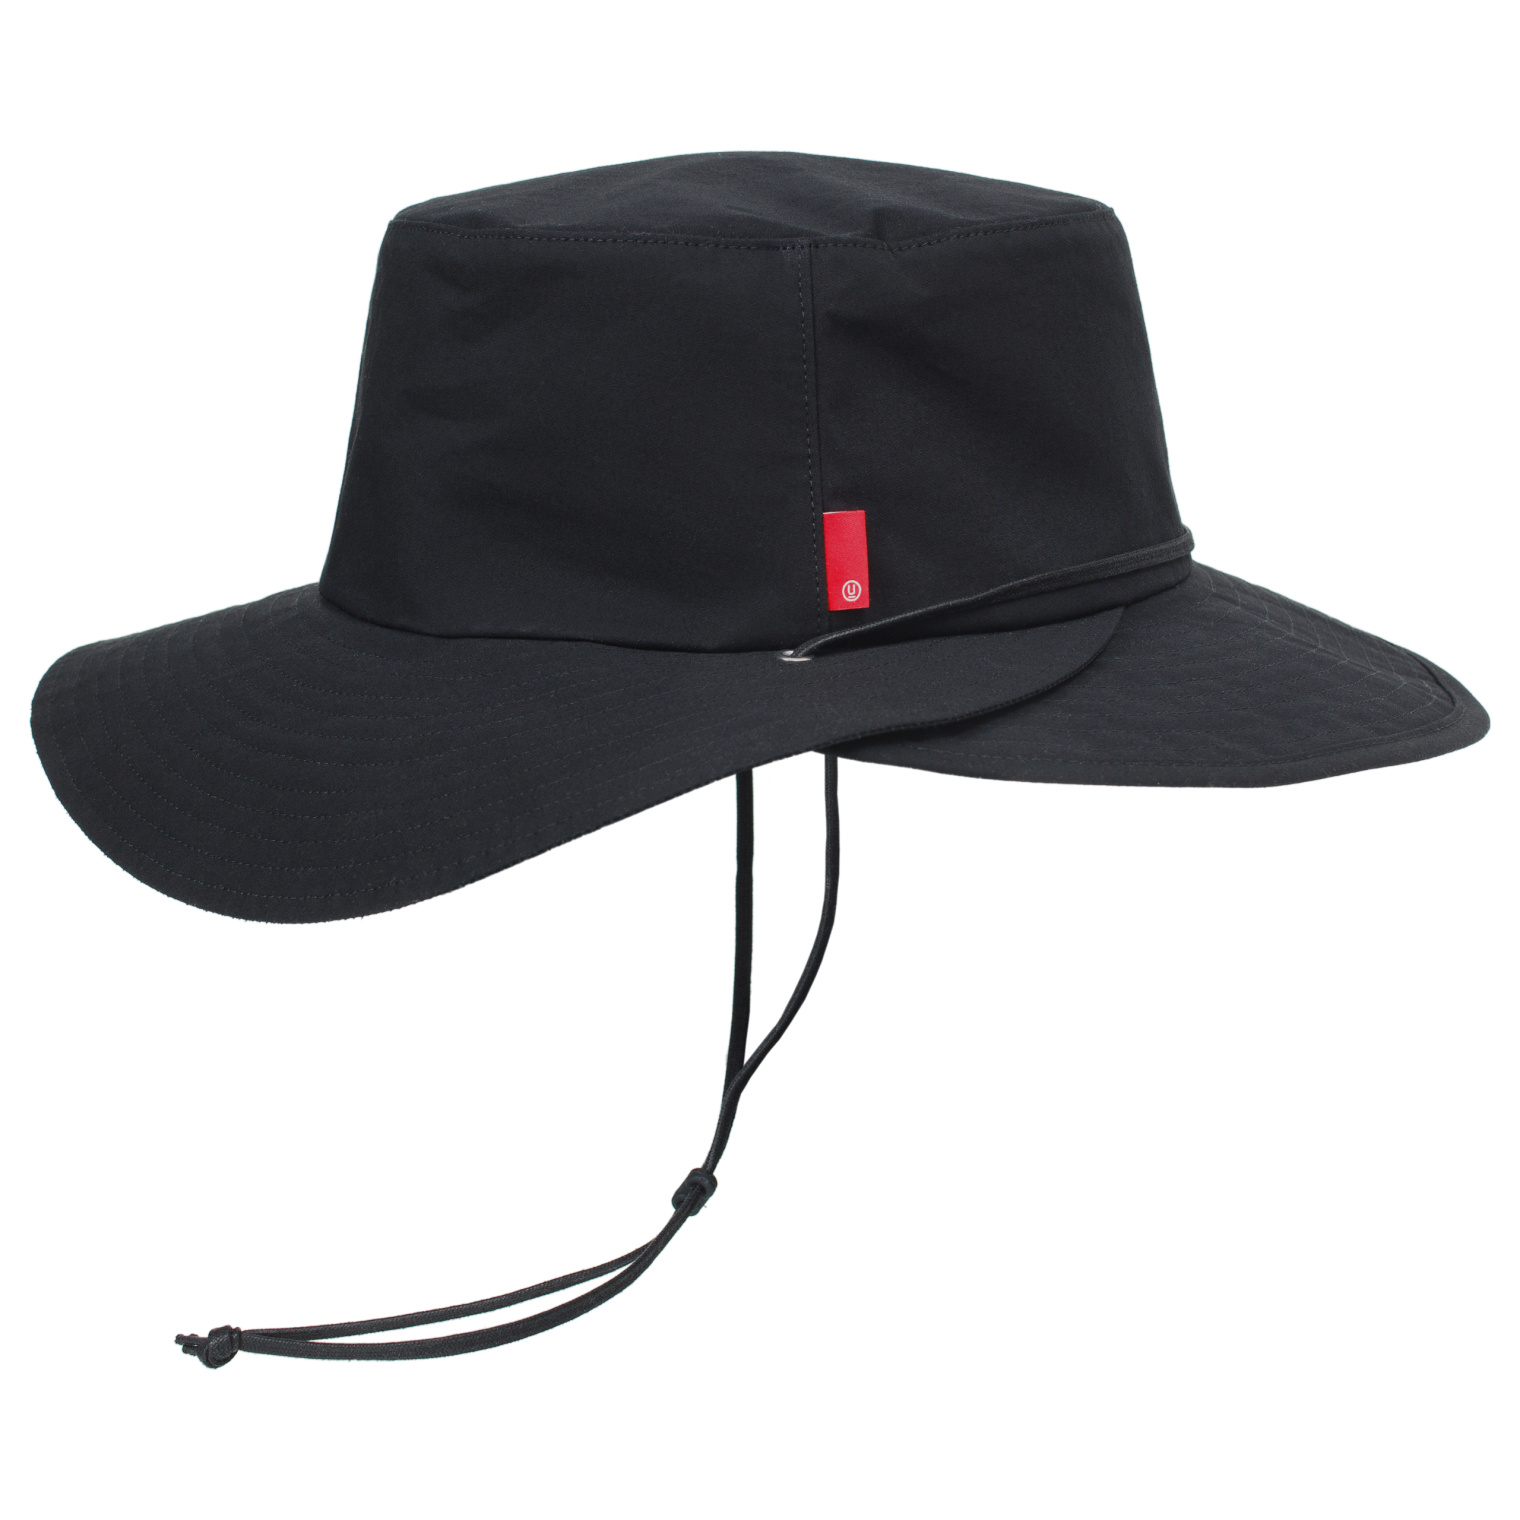 Undercover Black bucket hat